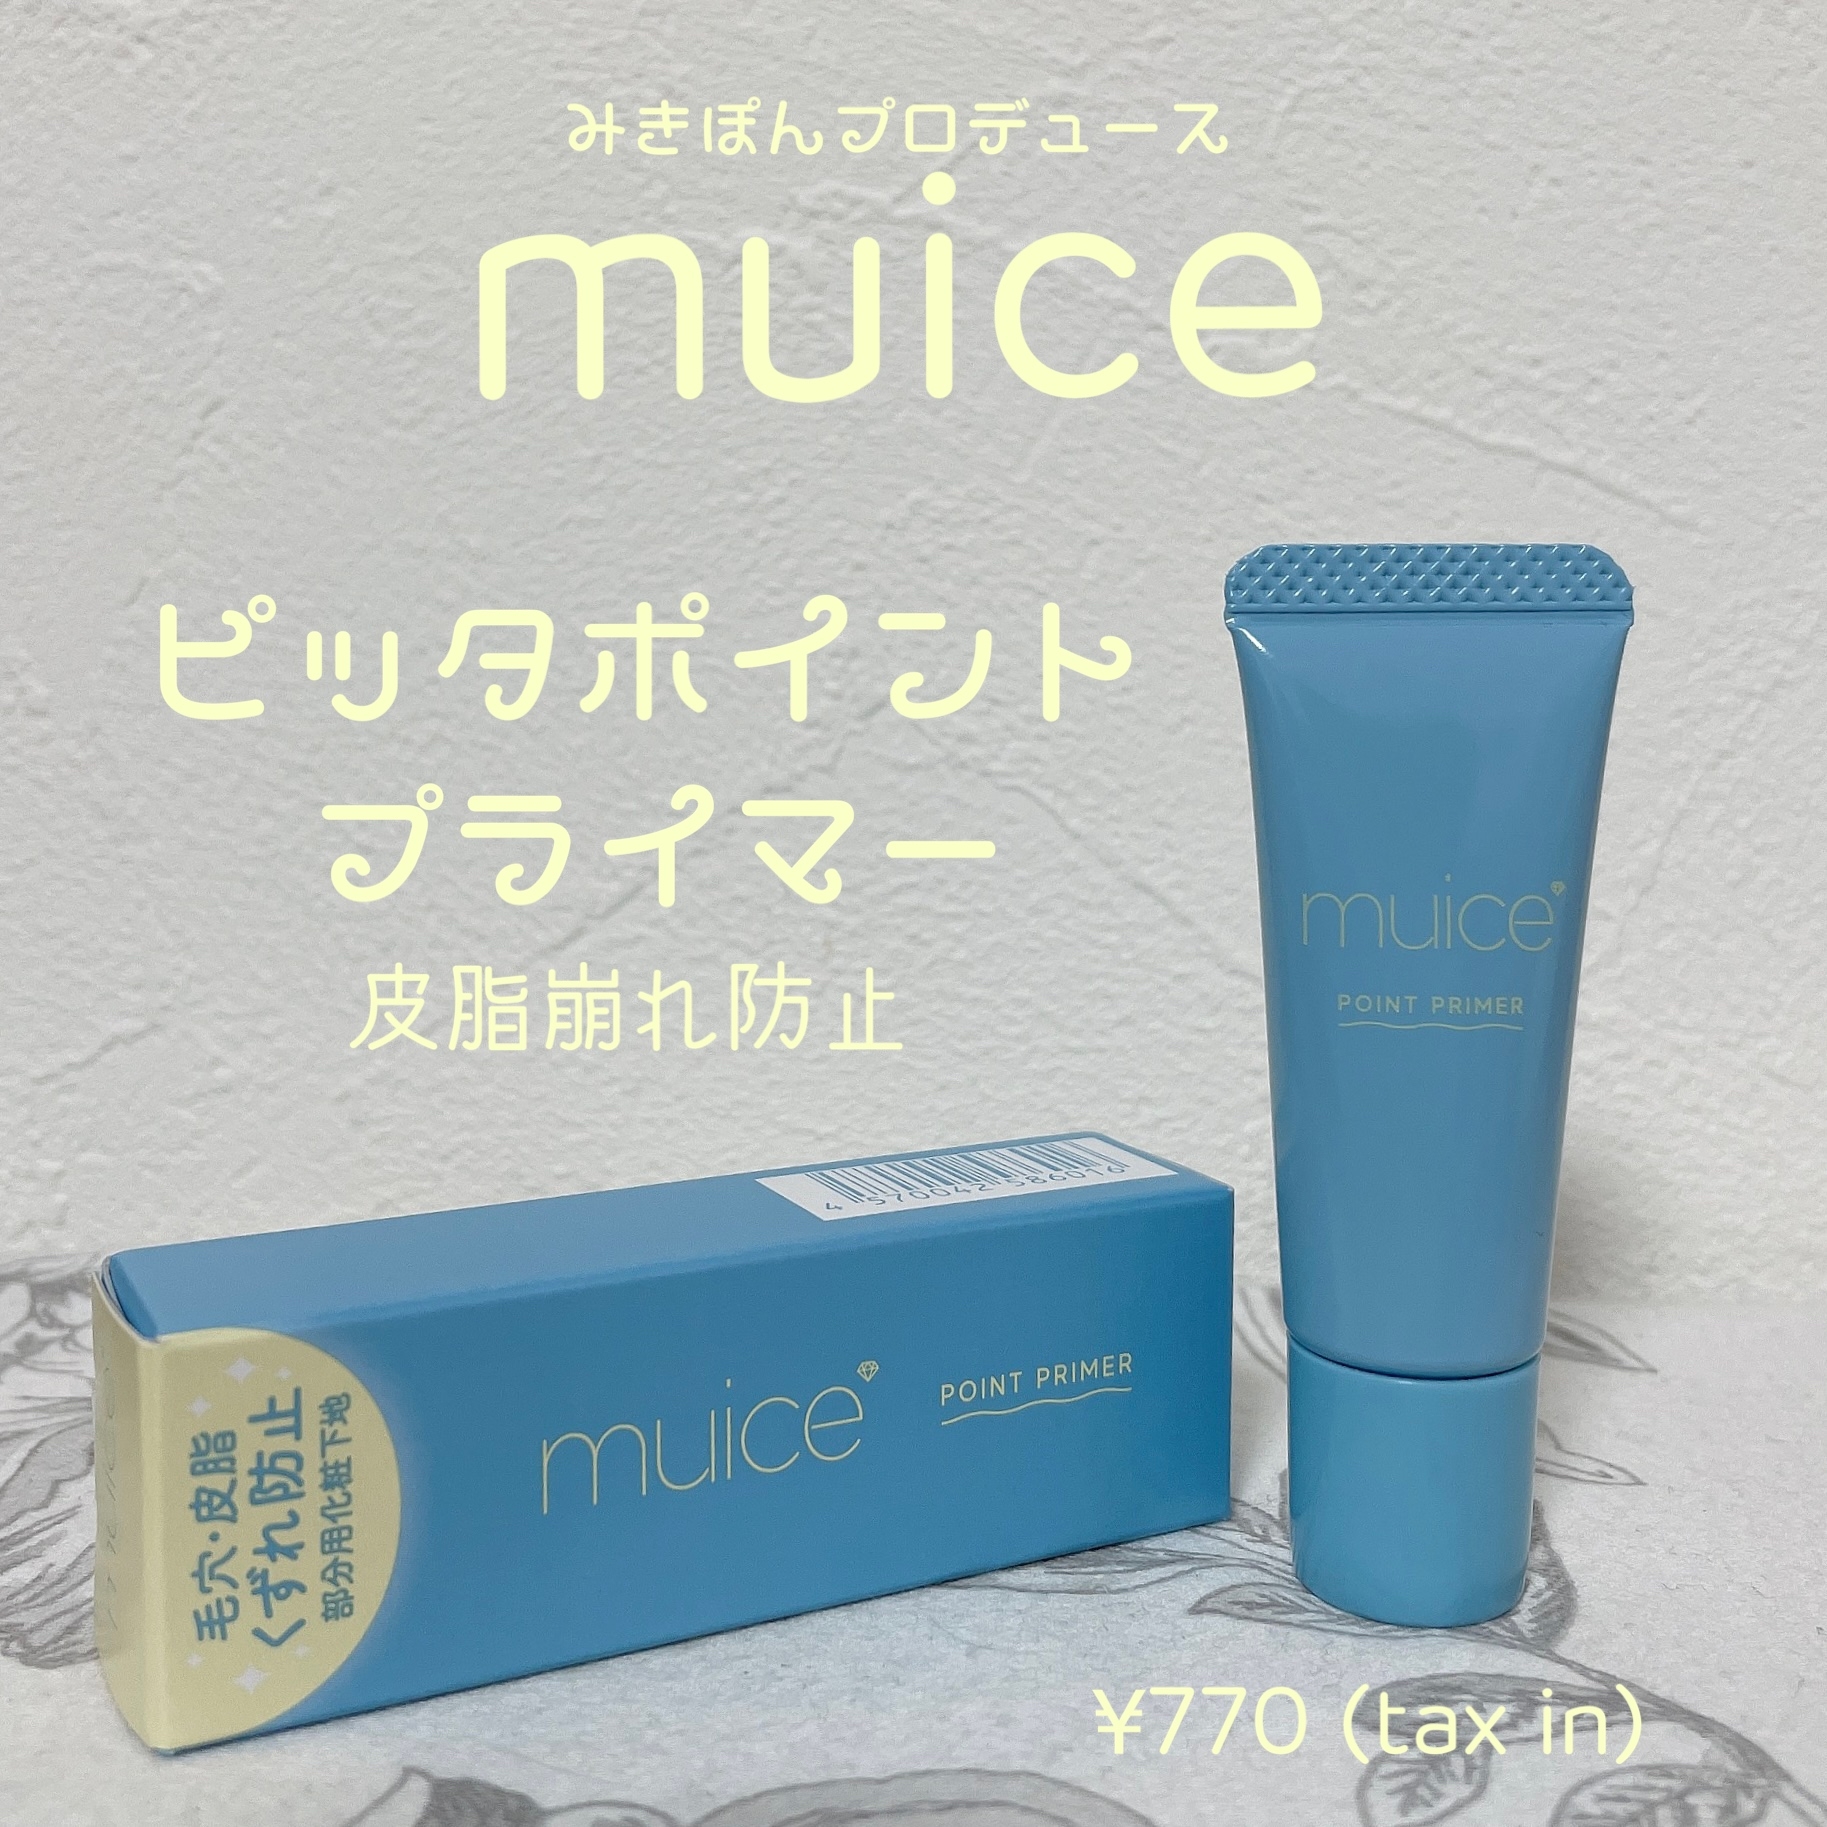 muice(ミュアイス) ピッタポイントプライマー 皮脂崩れ防止の良い点・メリットに関するもいさんの口コミ画像1